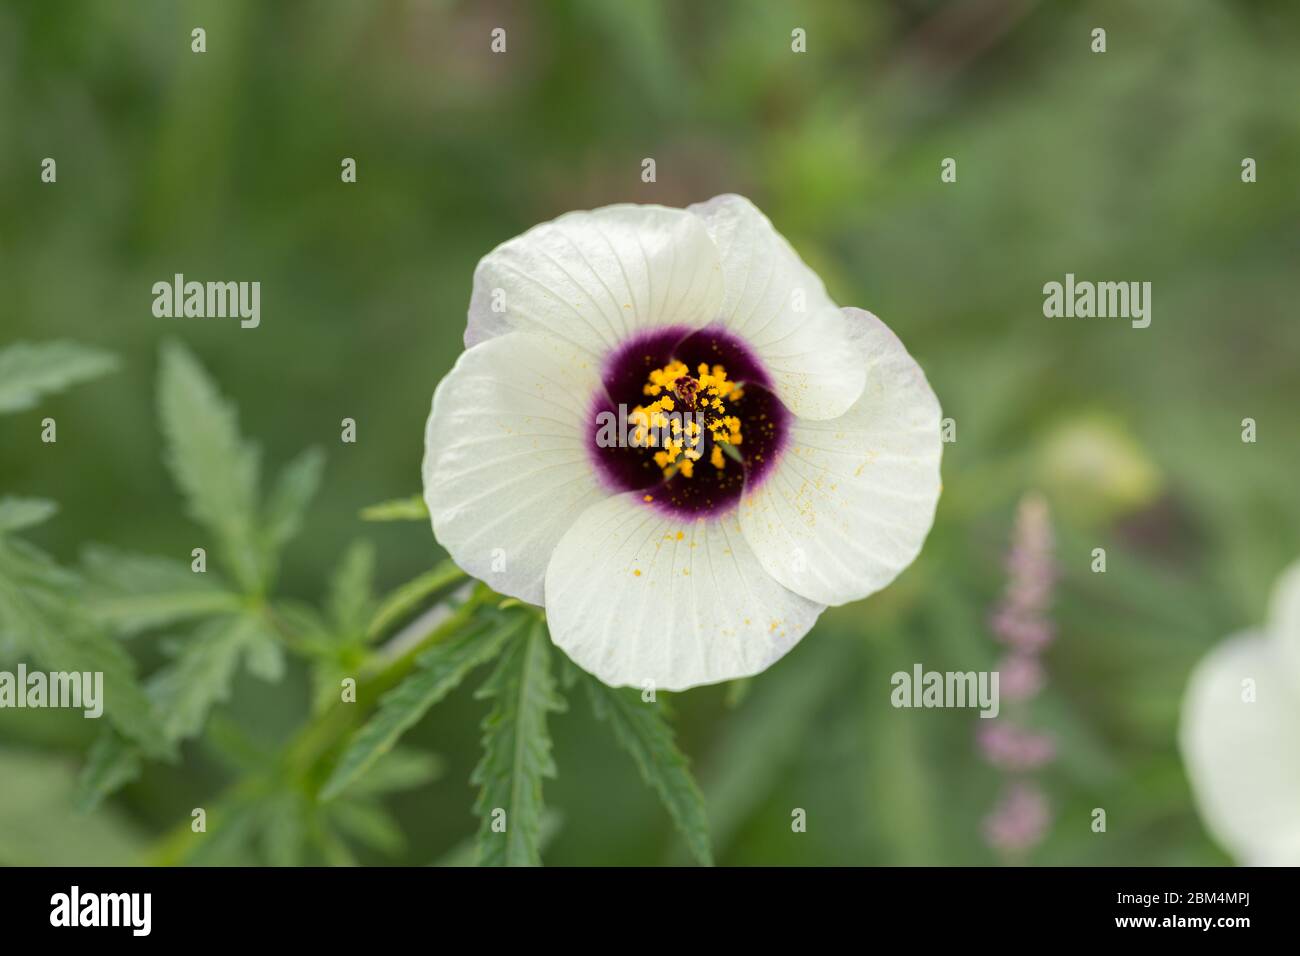 Makro von Hibiscus cannabinus Amethyst. Blume mit weißen Blütenblättern und lila und gelben Zentrum. Auch bekannt als Deccan Hanf oder Java Jute. Malvaceae Familie Stockfoto